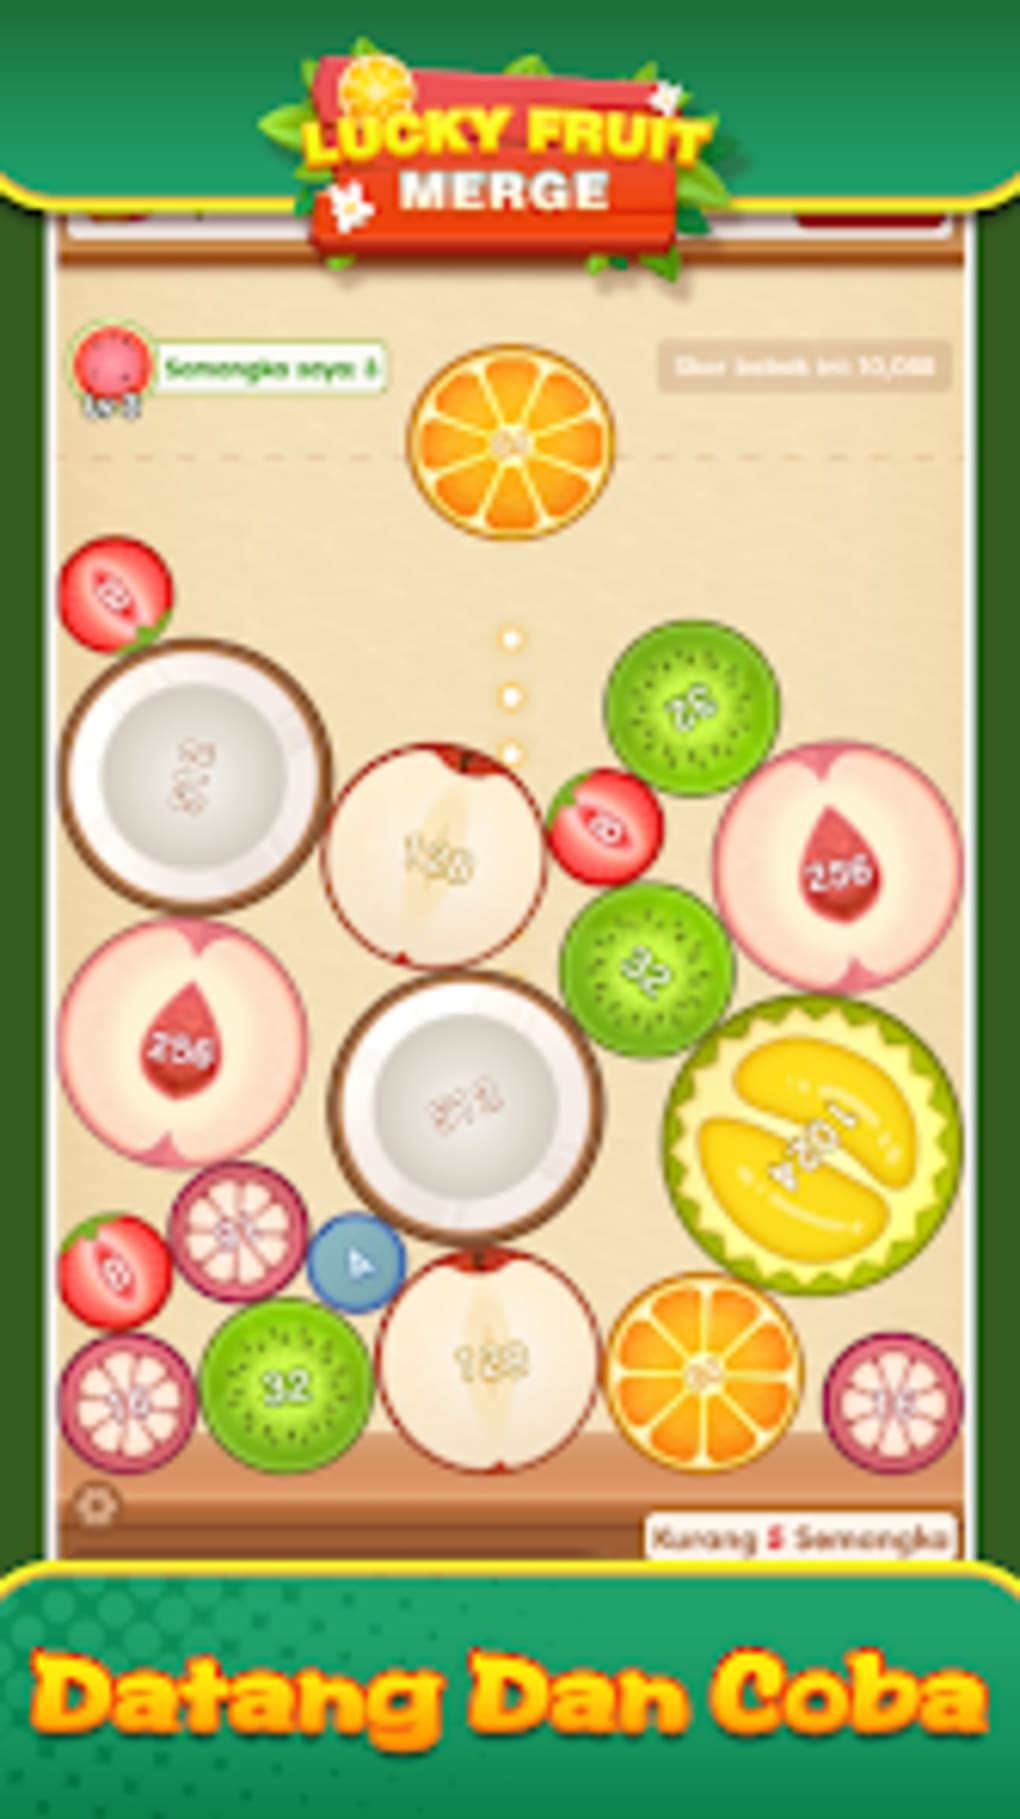 App com jogo da fruta para ganhar dinheiro funciona? Tudo sobre